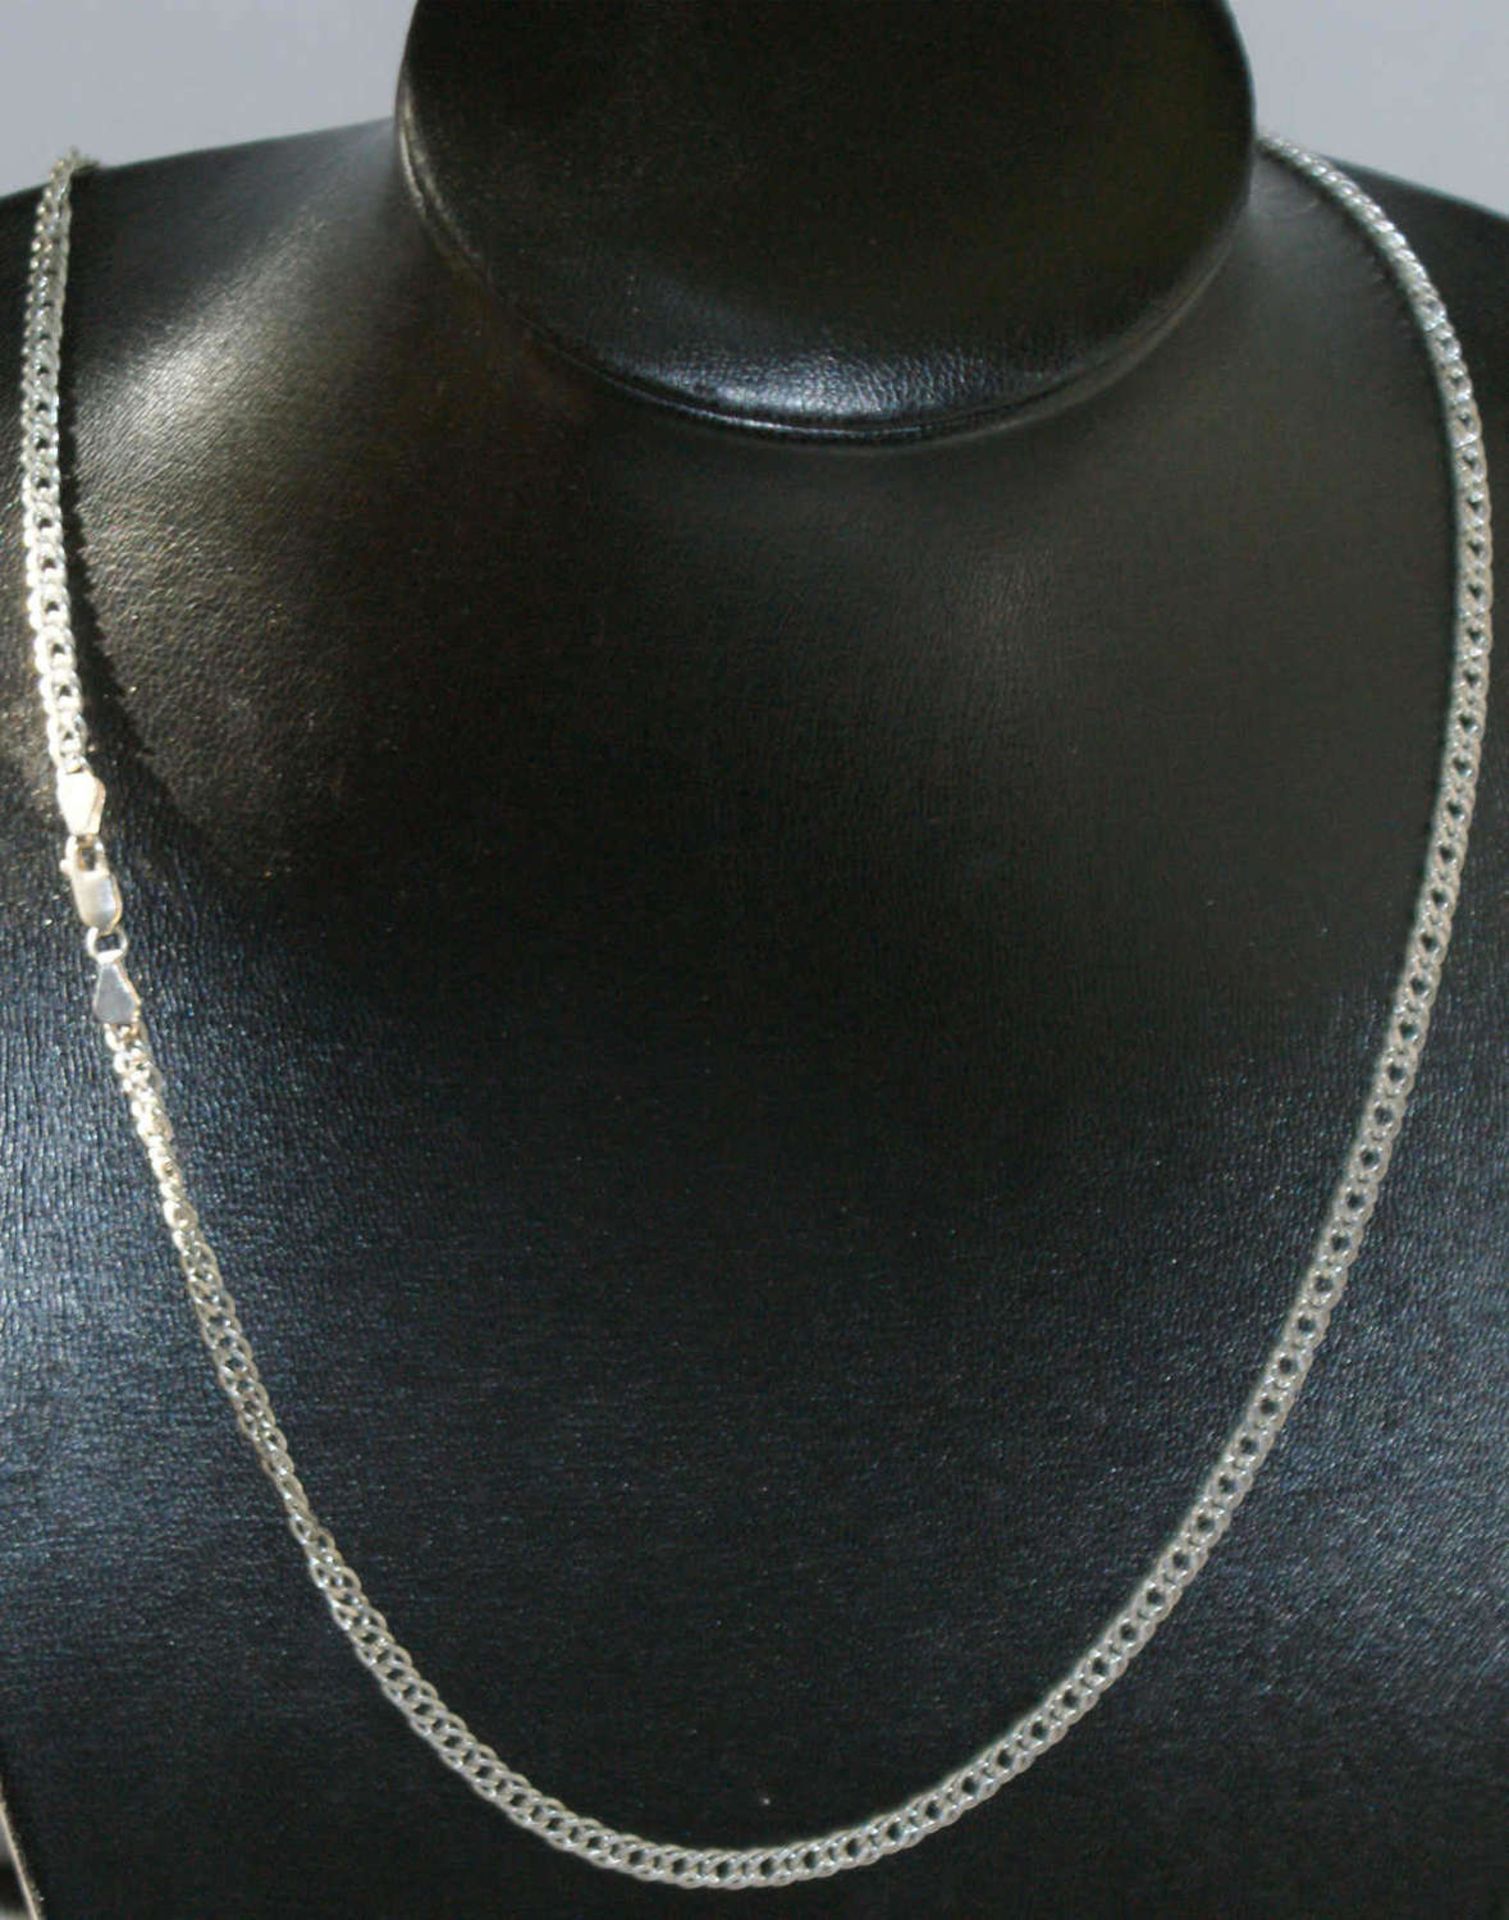 Schmuckset, 925er Silber, bestehend aus 1 Kette, Länge ca. 44 cm, sowie 1 Armband ca. 19 cm. Gewicht